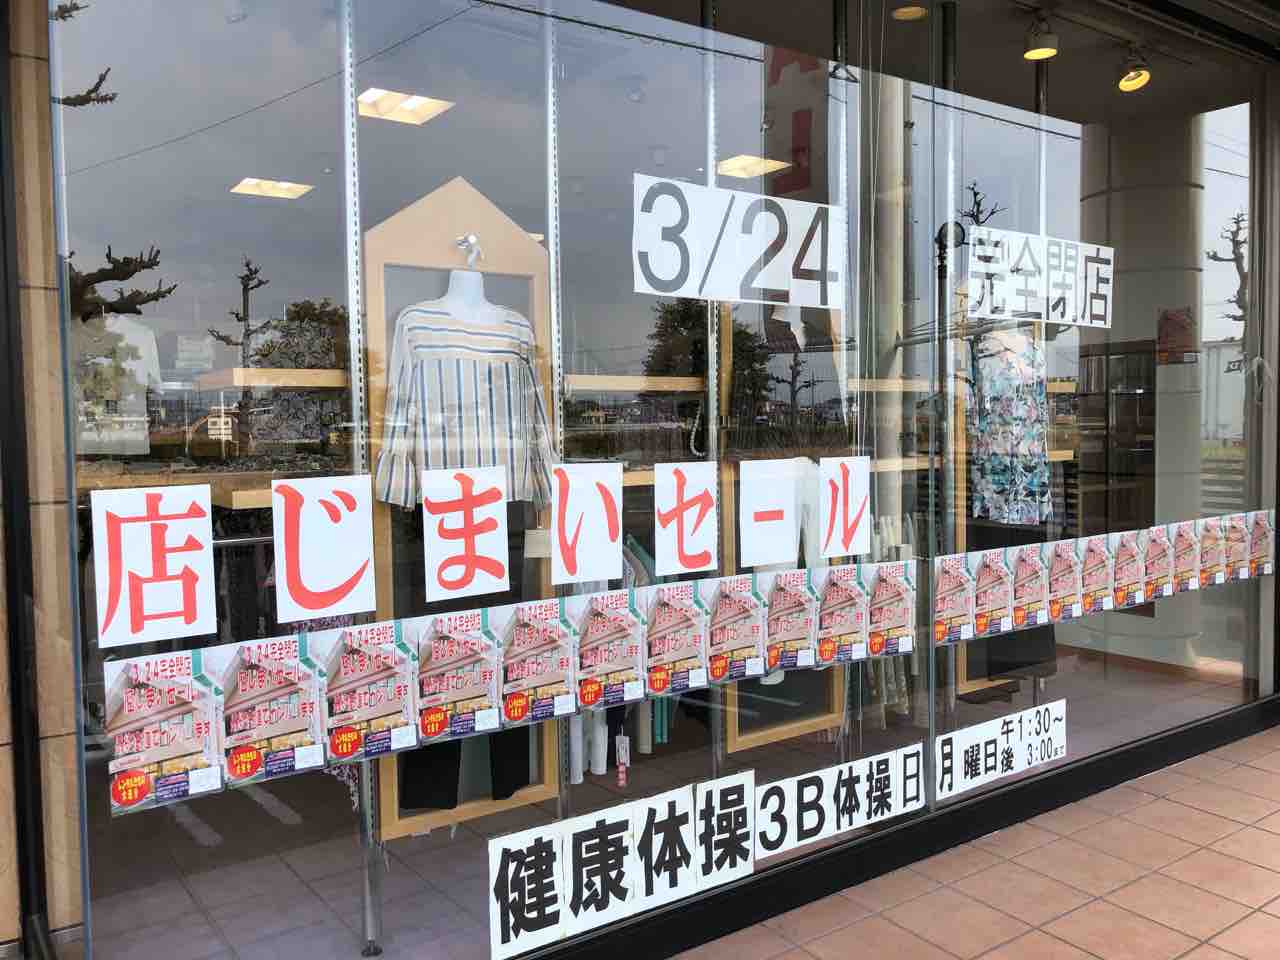 『桑山呉服店 きもの&ブティック kuwayama』3/24に閉店・店じまいセール